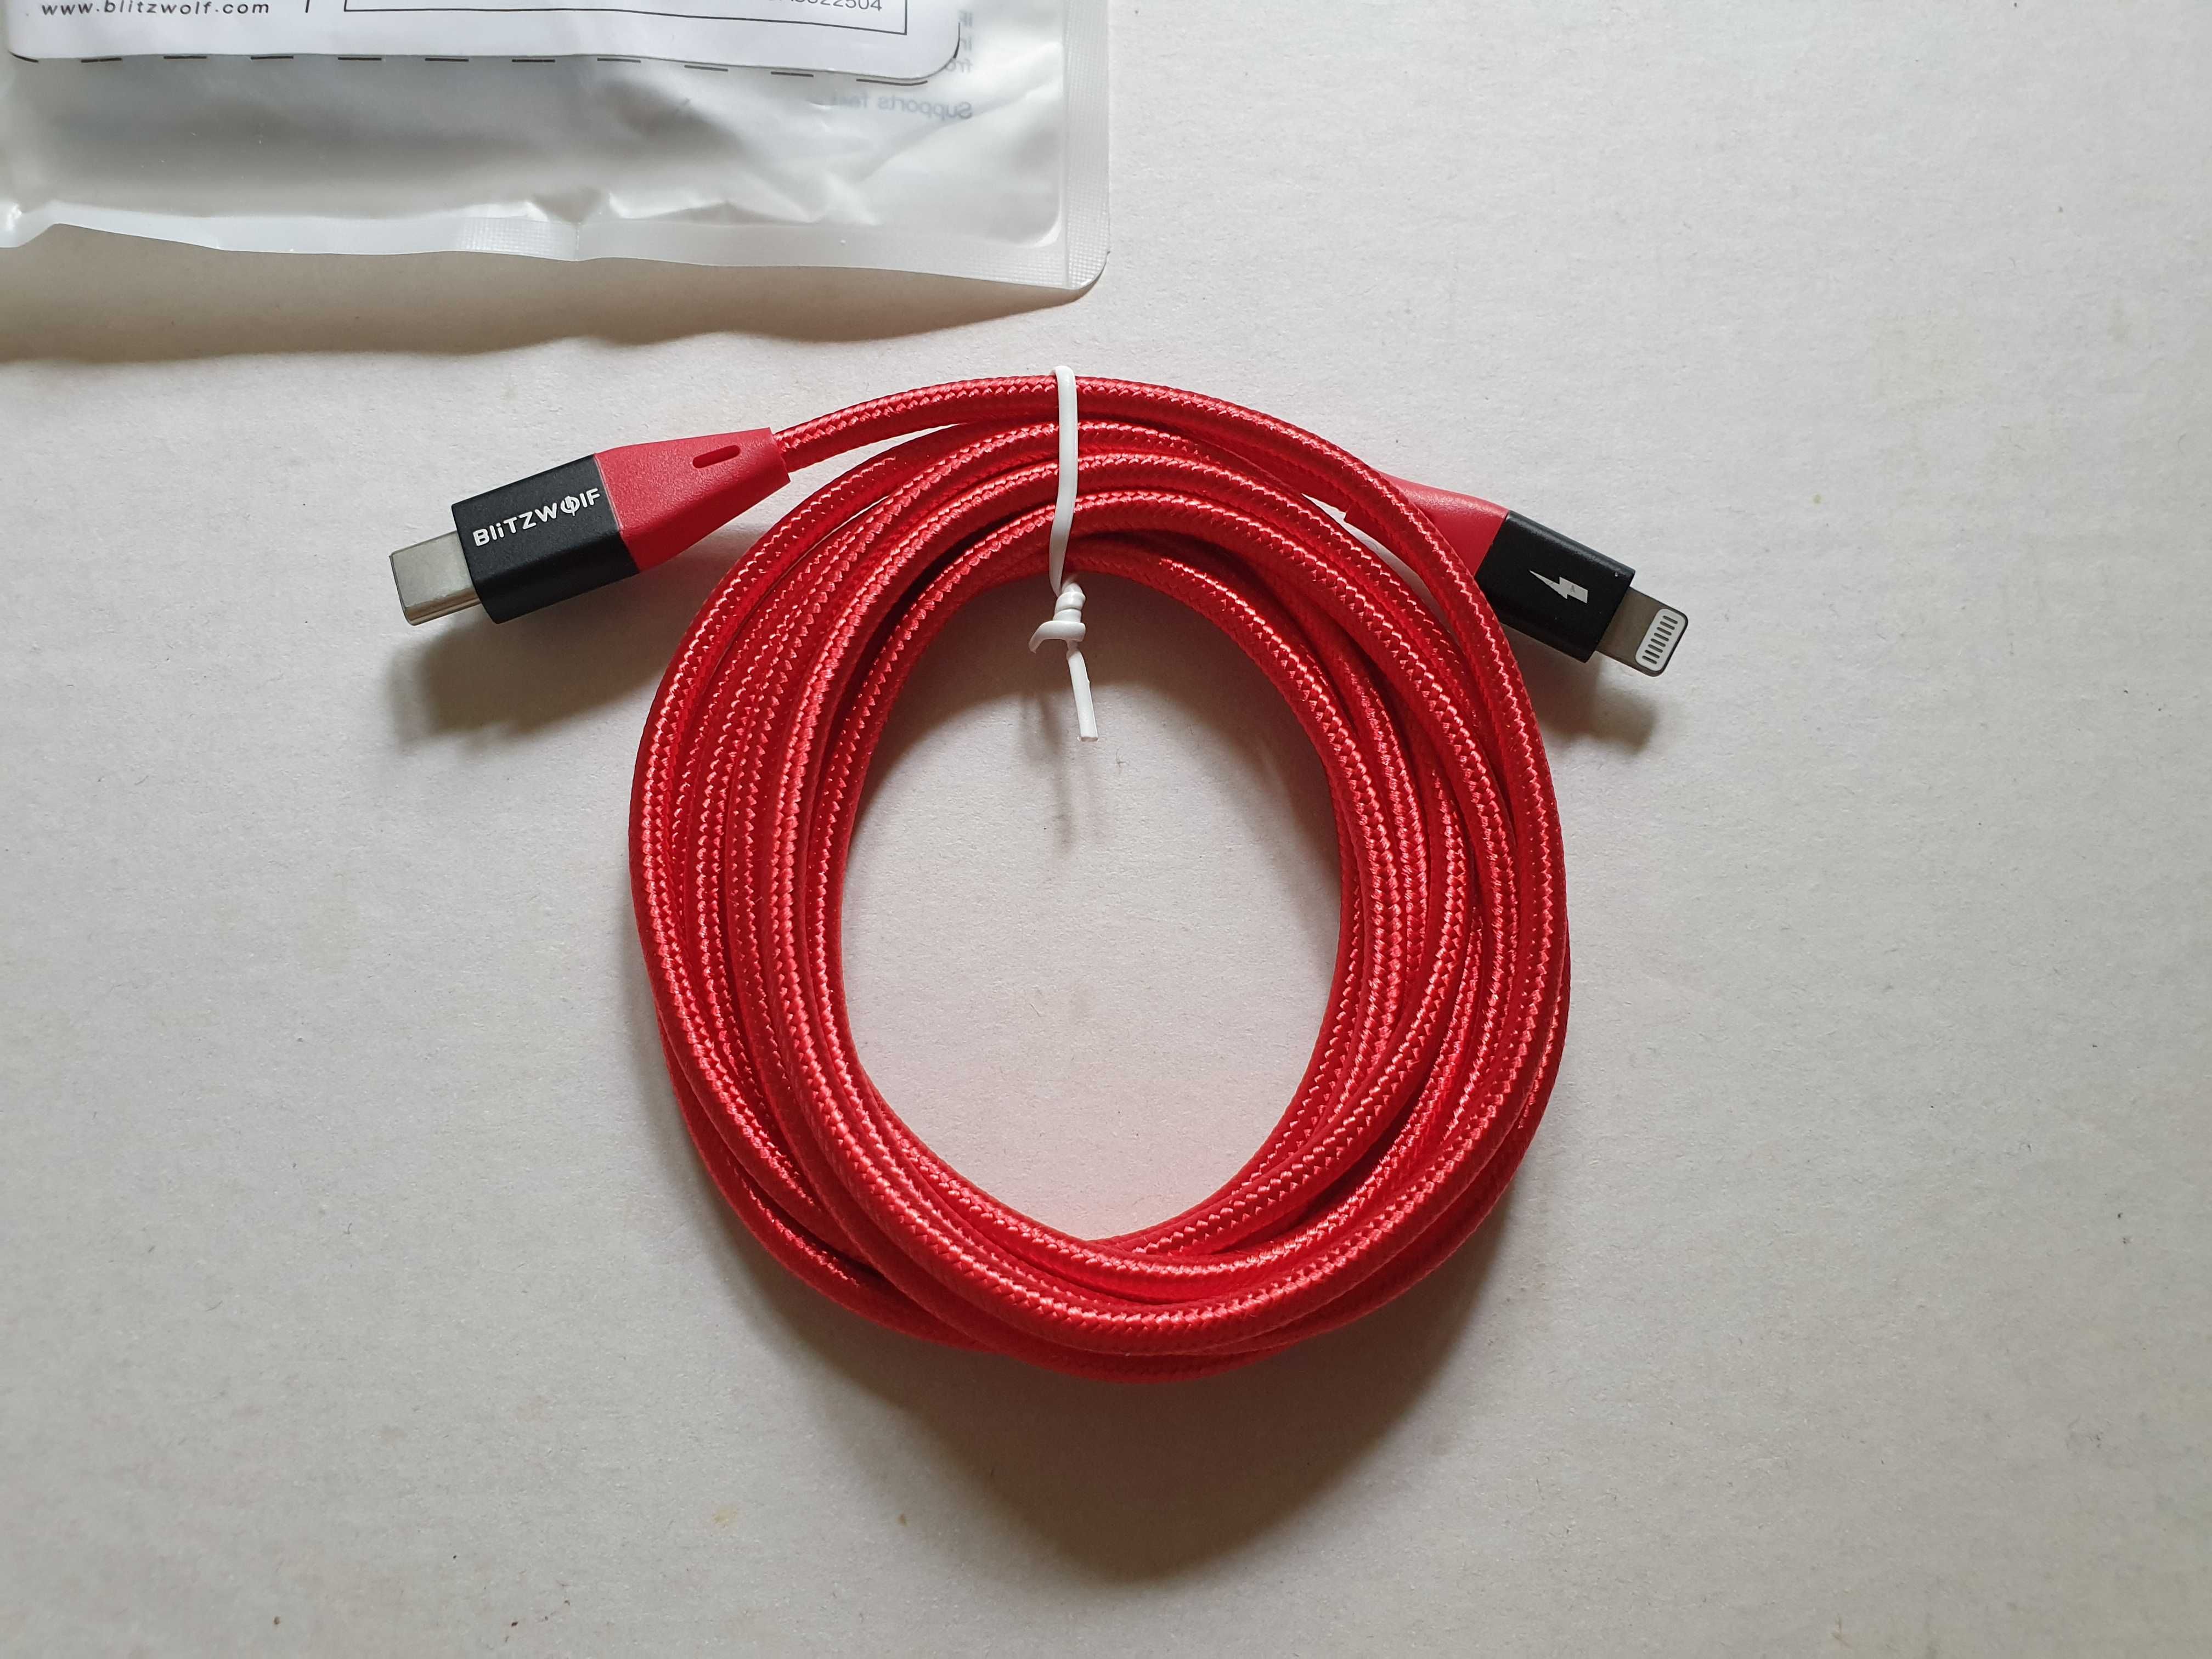 Blitzwolf BW-CL3 MFI сертифицированный type-c lightning кабель (1,8 м)